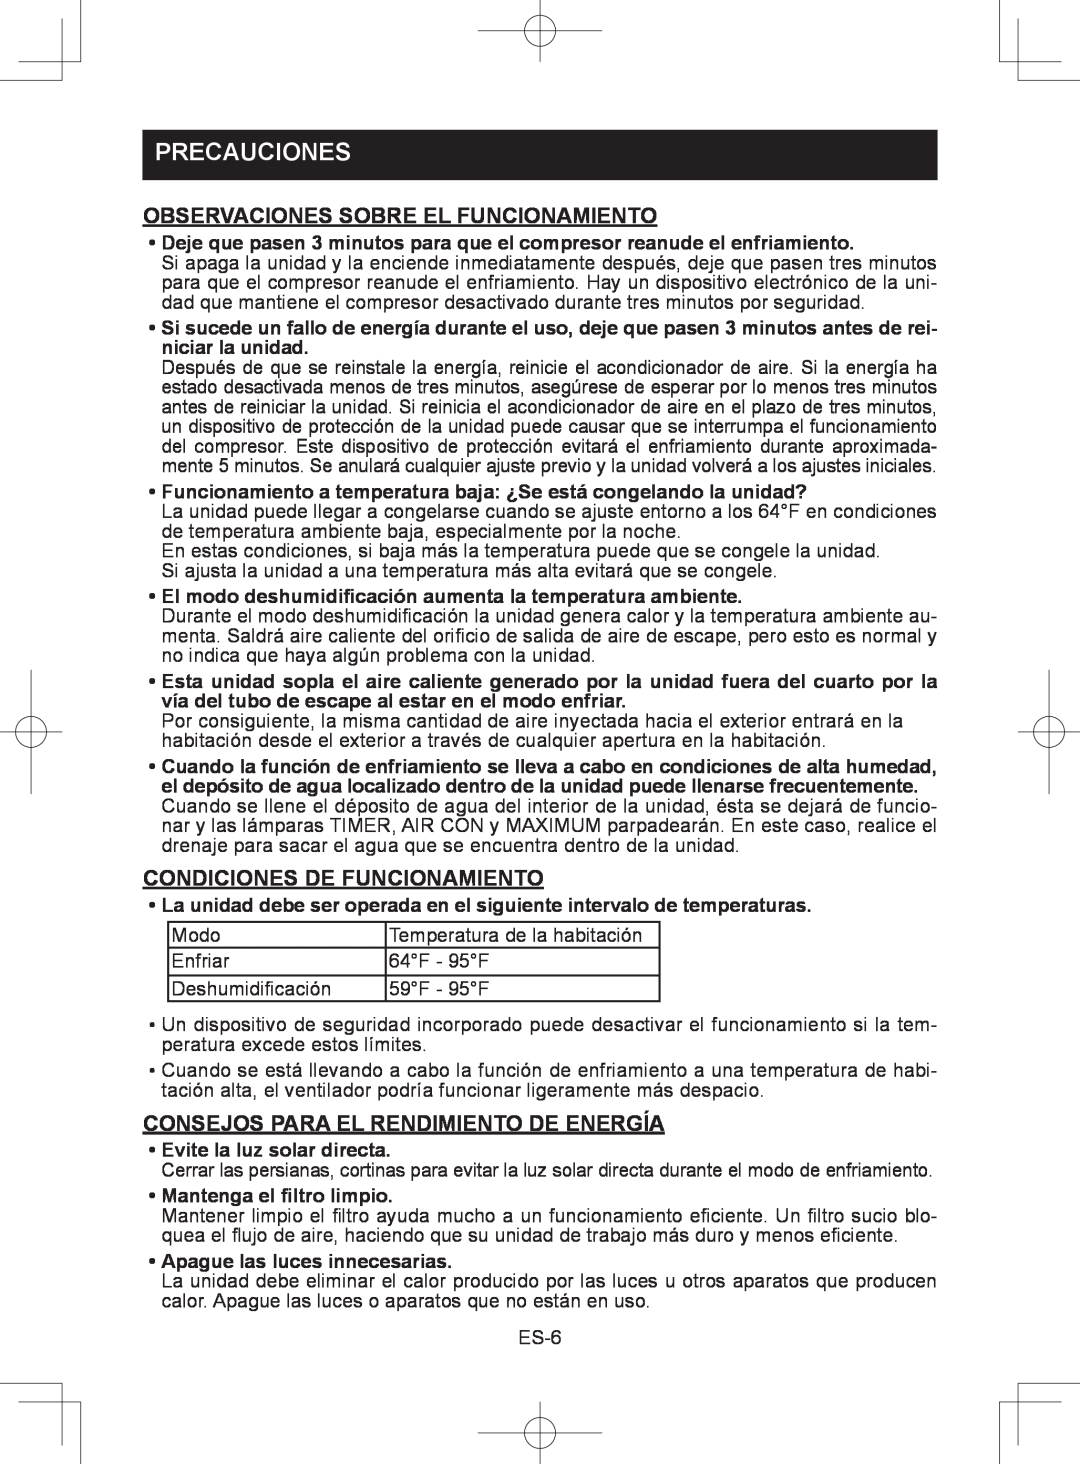 Sharp CV-2P10SC operation manual Observaciones Sobre El Funcionamiento, Condiciones De Funcionamiento, Precauciones 